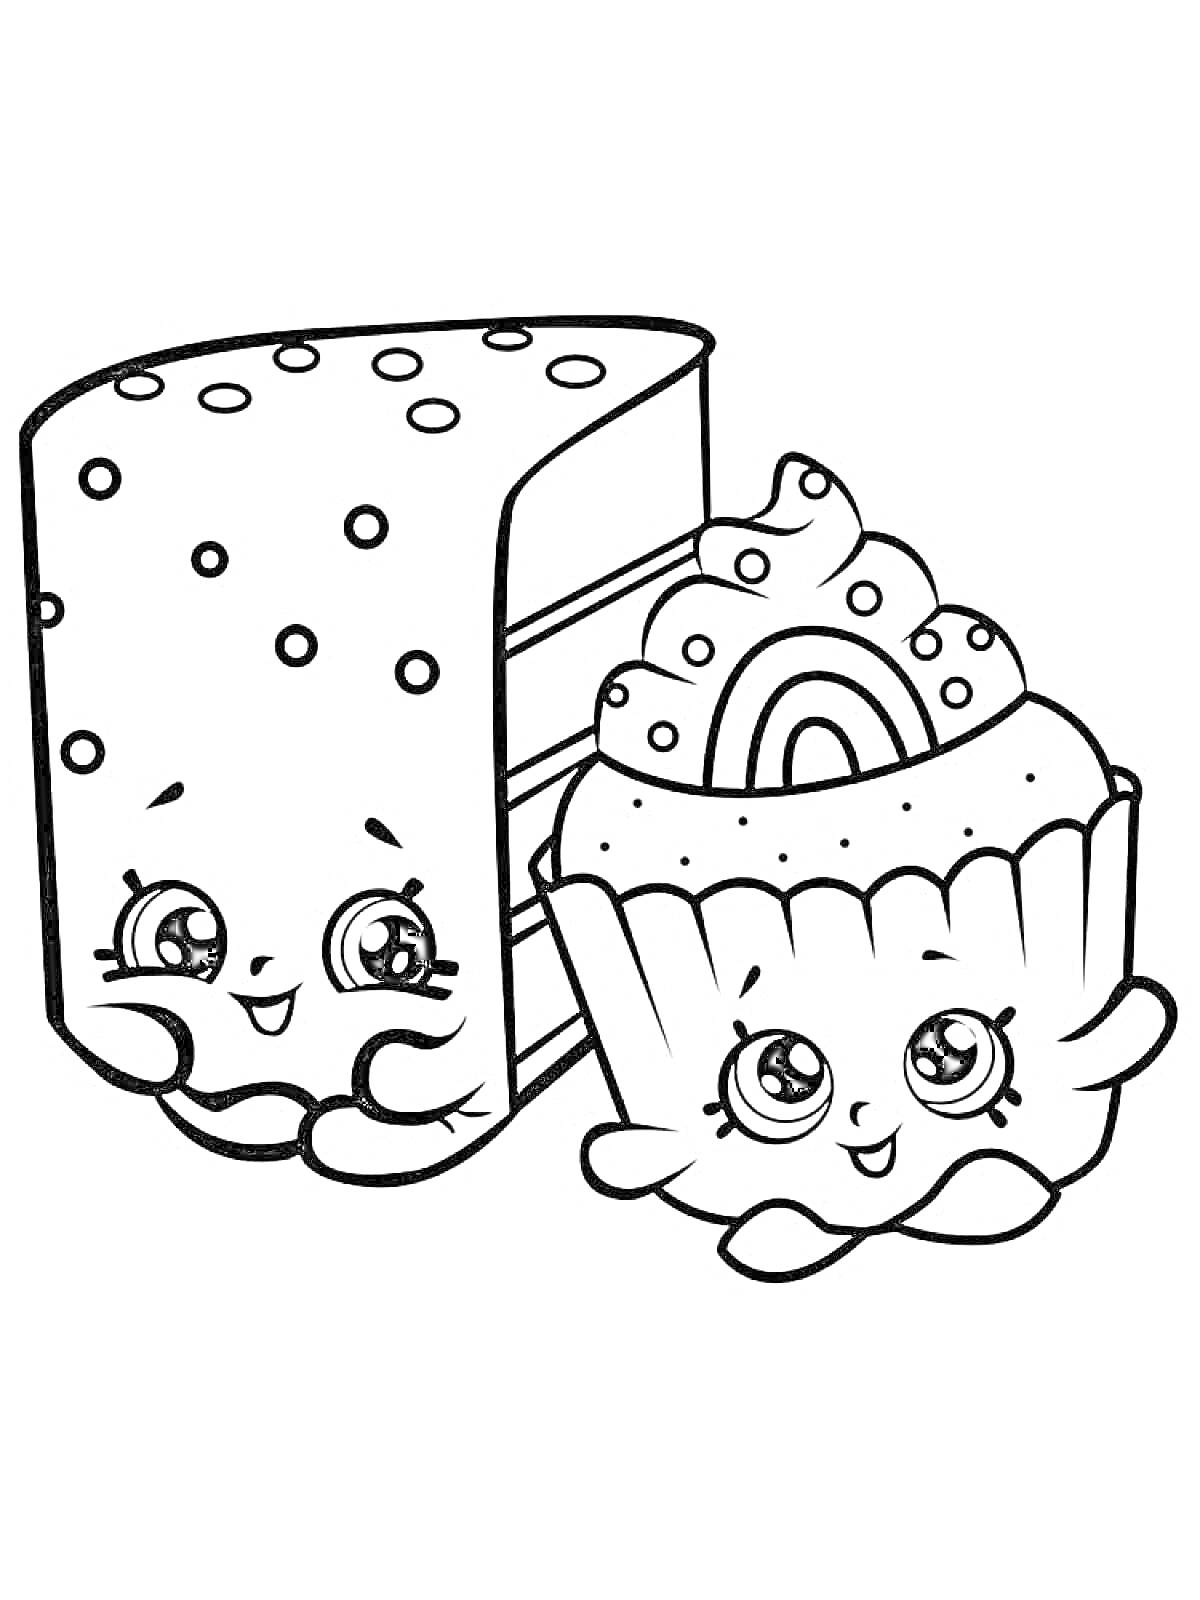 Раскраска Торт и кекс с радугой и милыми лицами